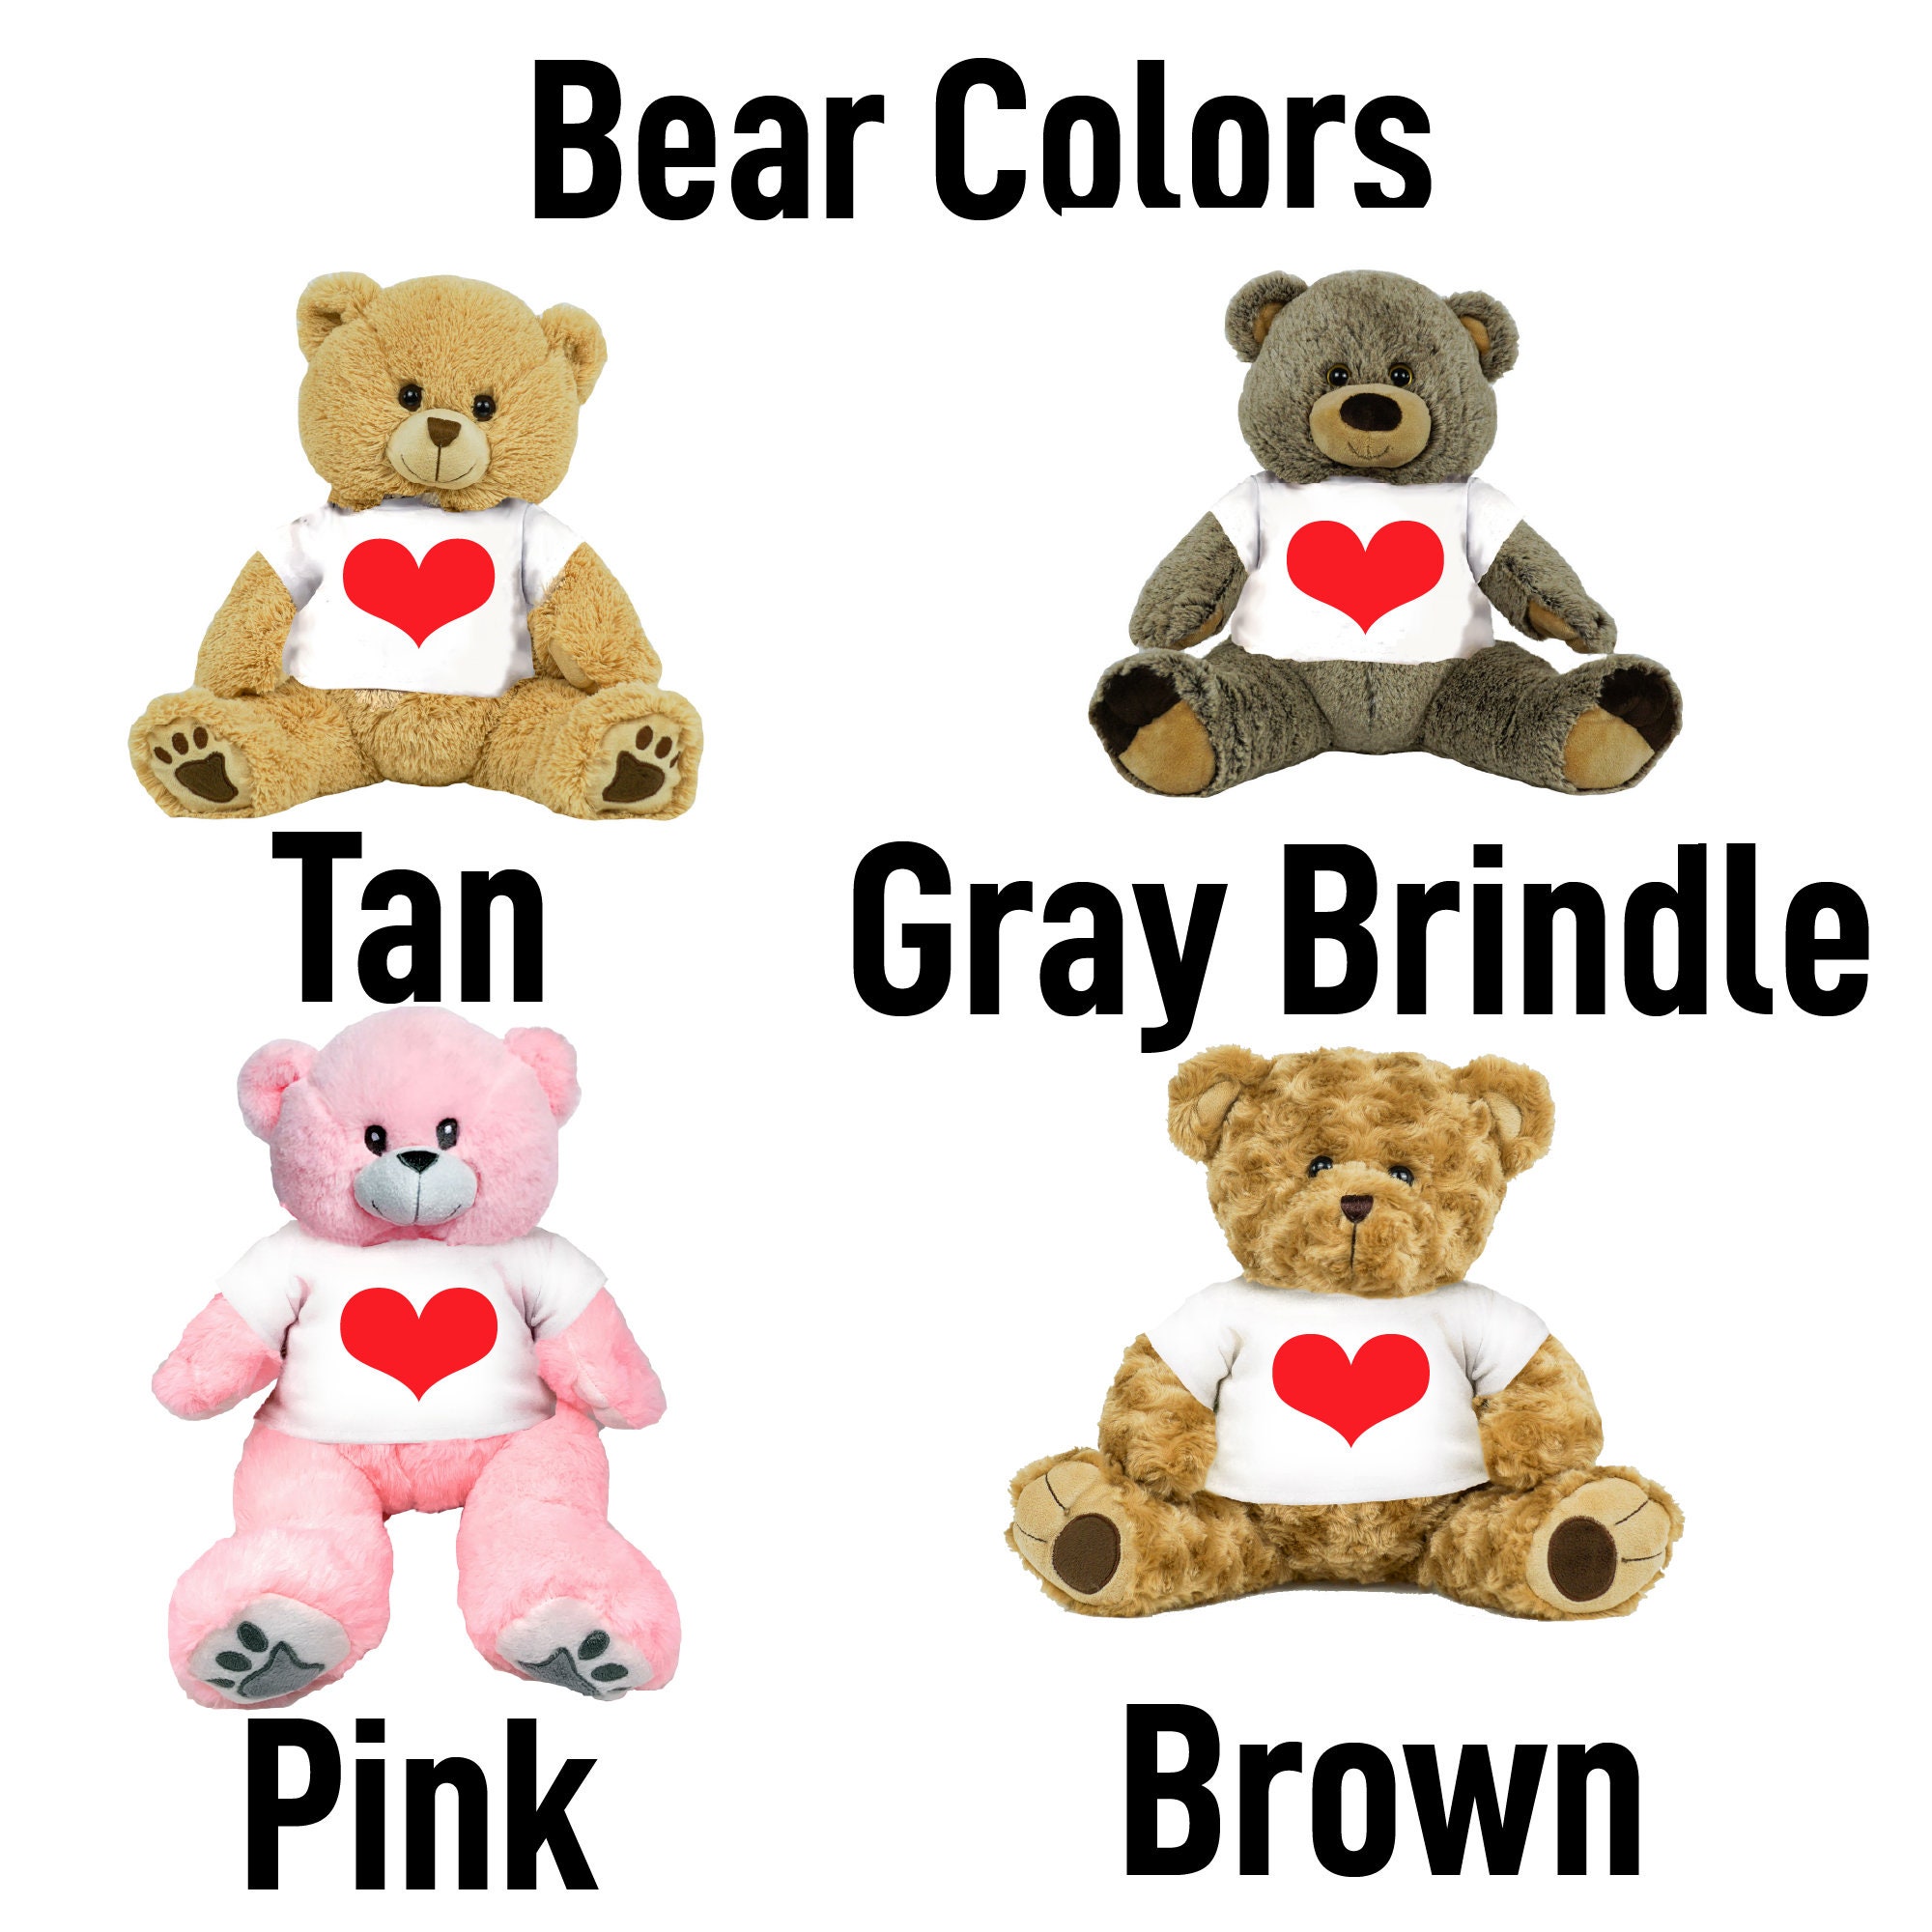 Teddy bear перевод язык. Имя для медведя плюшевого. Teddy-Bears. Brown Teddy Bear перевод на русский. What Colour is the Teddy.